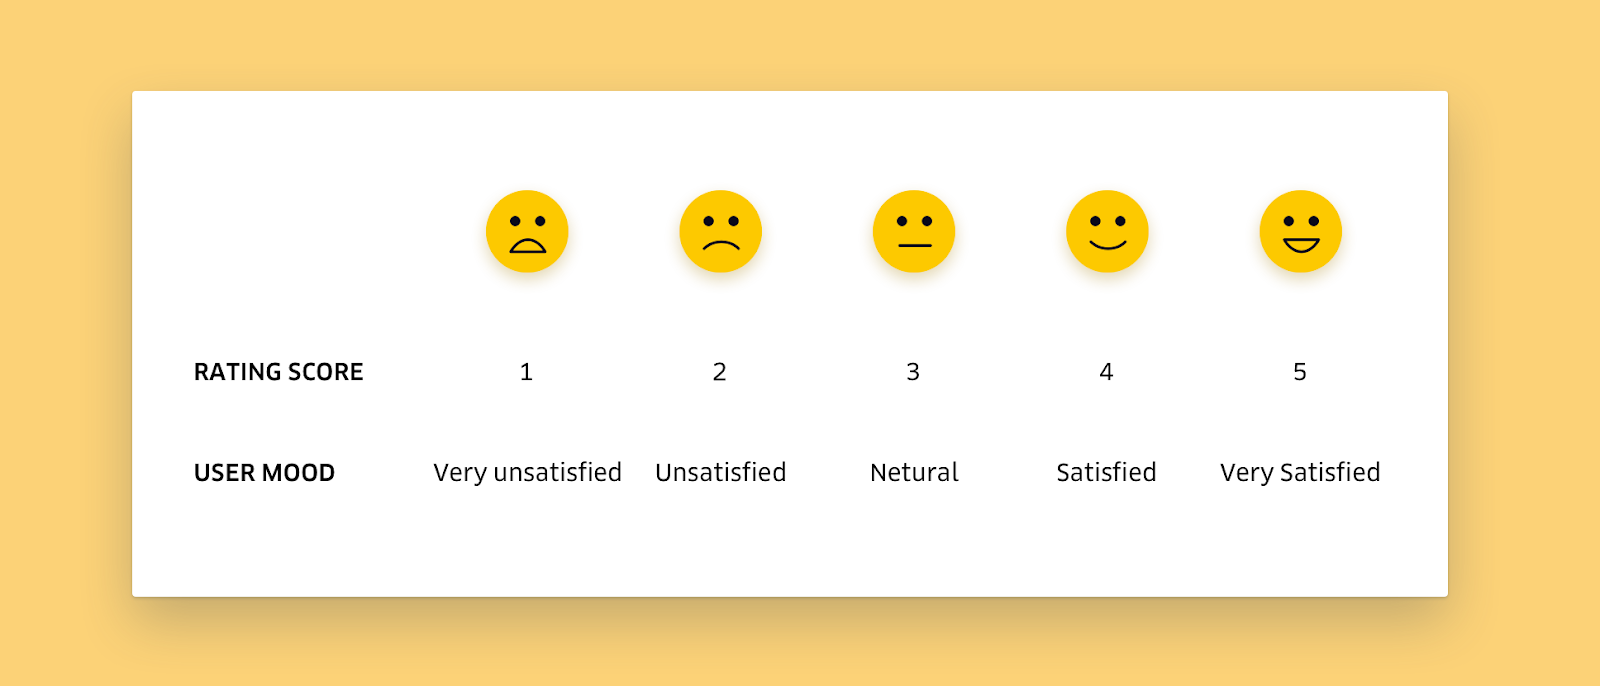 Customer Satisfaction Score (CSAT) - customer satisfaction and retention